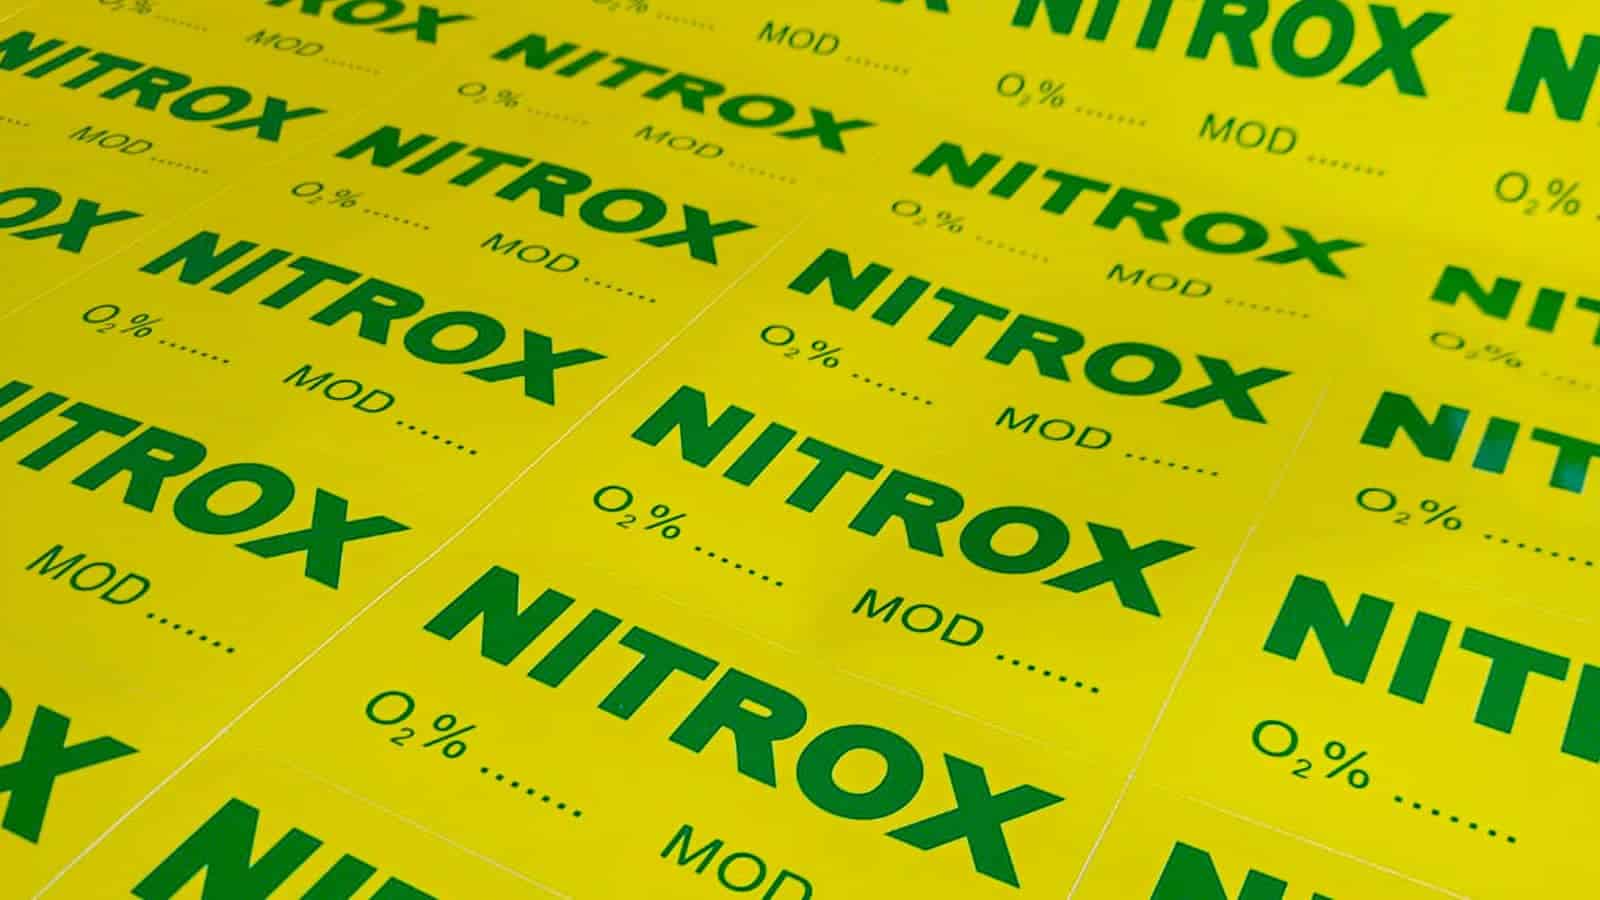 Jak obliczyć MOD dla nitroxu? 4szkoła nurkowania kraków